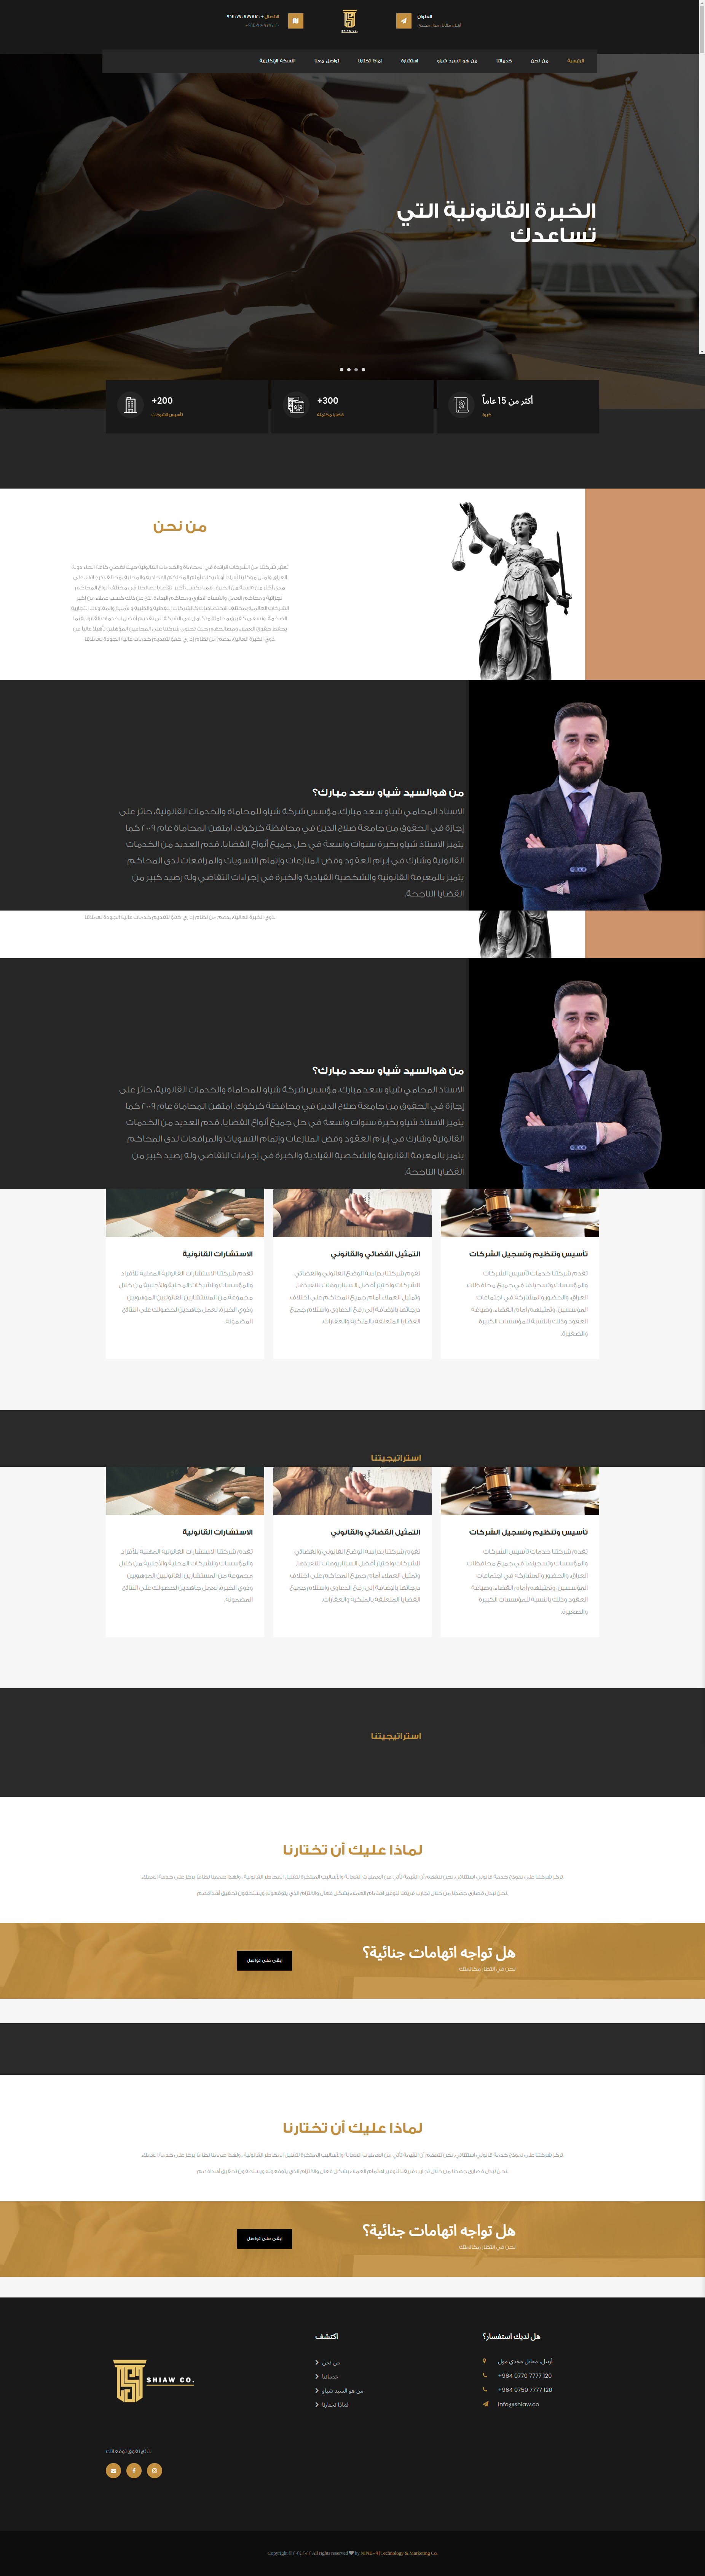 Lawyer Shiaw website